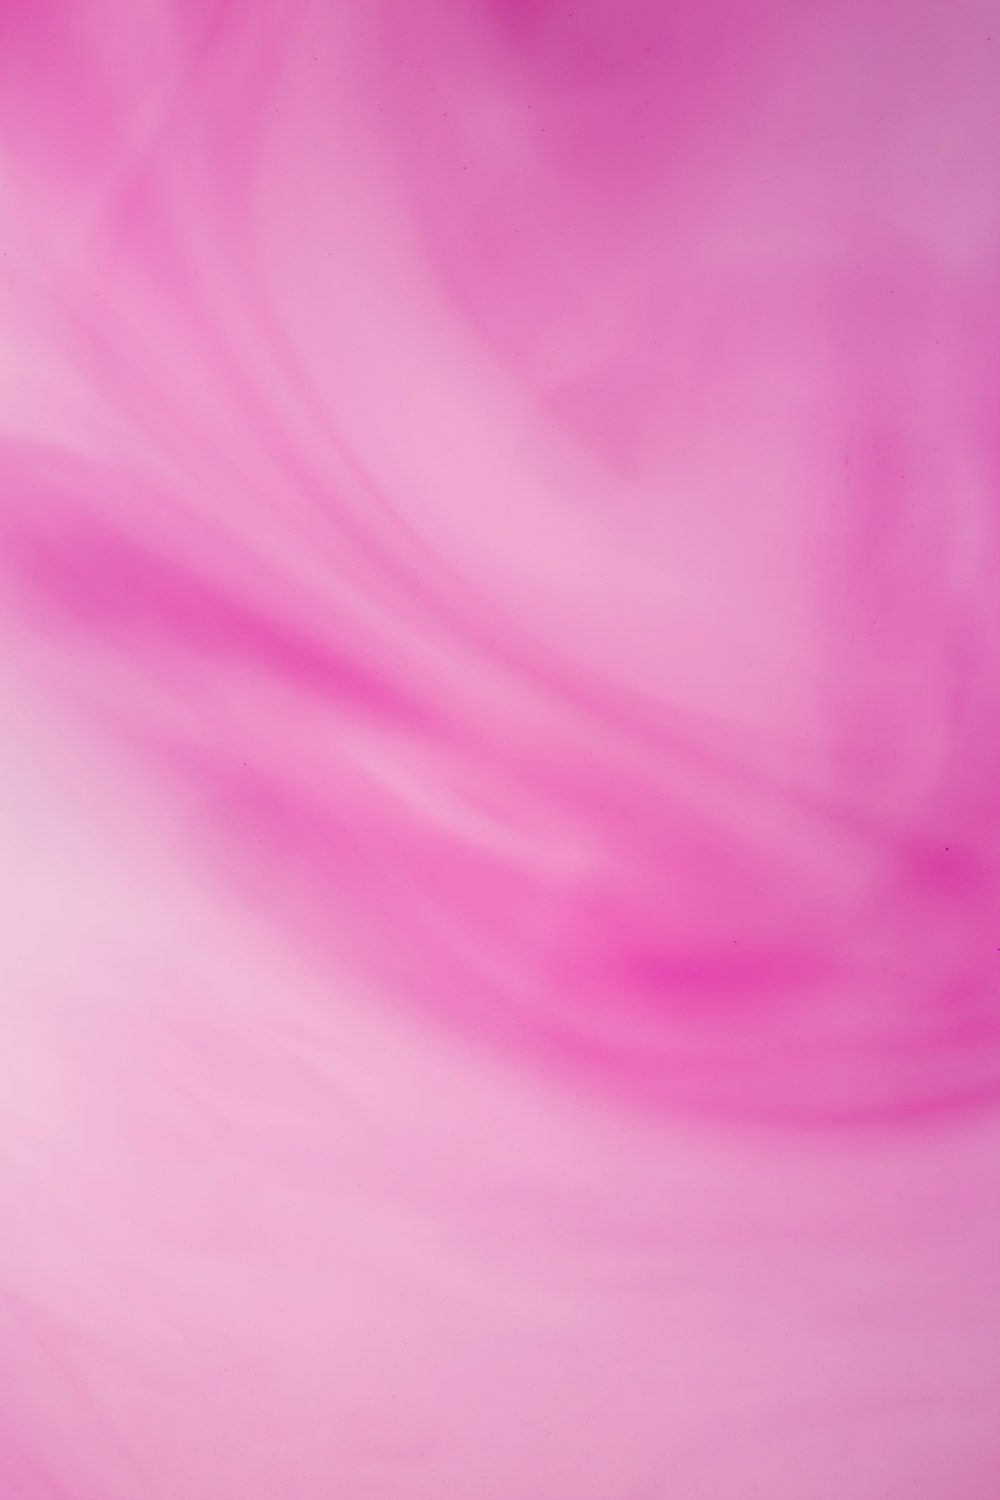 Hình ảnh gradient hồng tràn đầy ấn tượng và sáng tạo trên Unsplash sẽ làm say lòng những người yêu thích sự tinh tế và đặc biệt. Hãy chọn ngay những bức ảnh miễn phí để đưa chúng vào bộ sưu tập của mình và cảm nhận sự đẹp mắt.